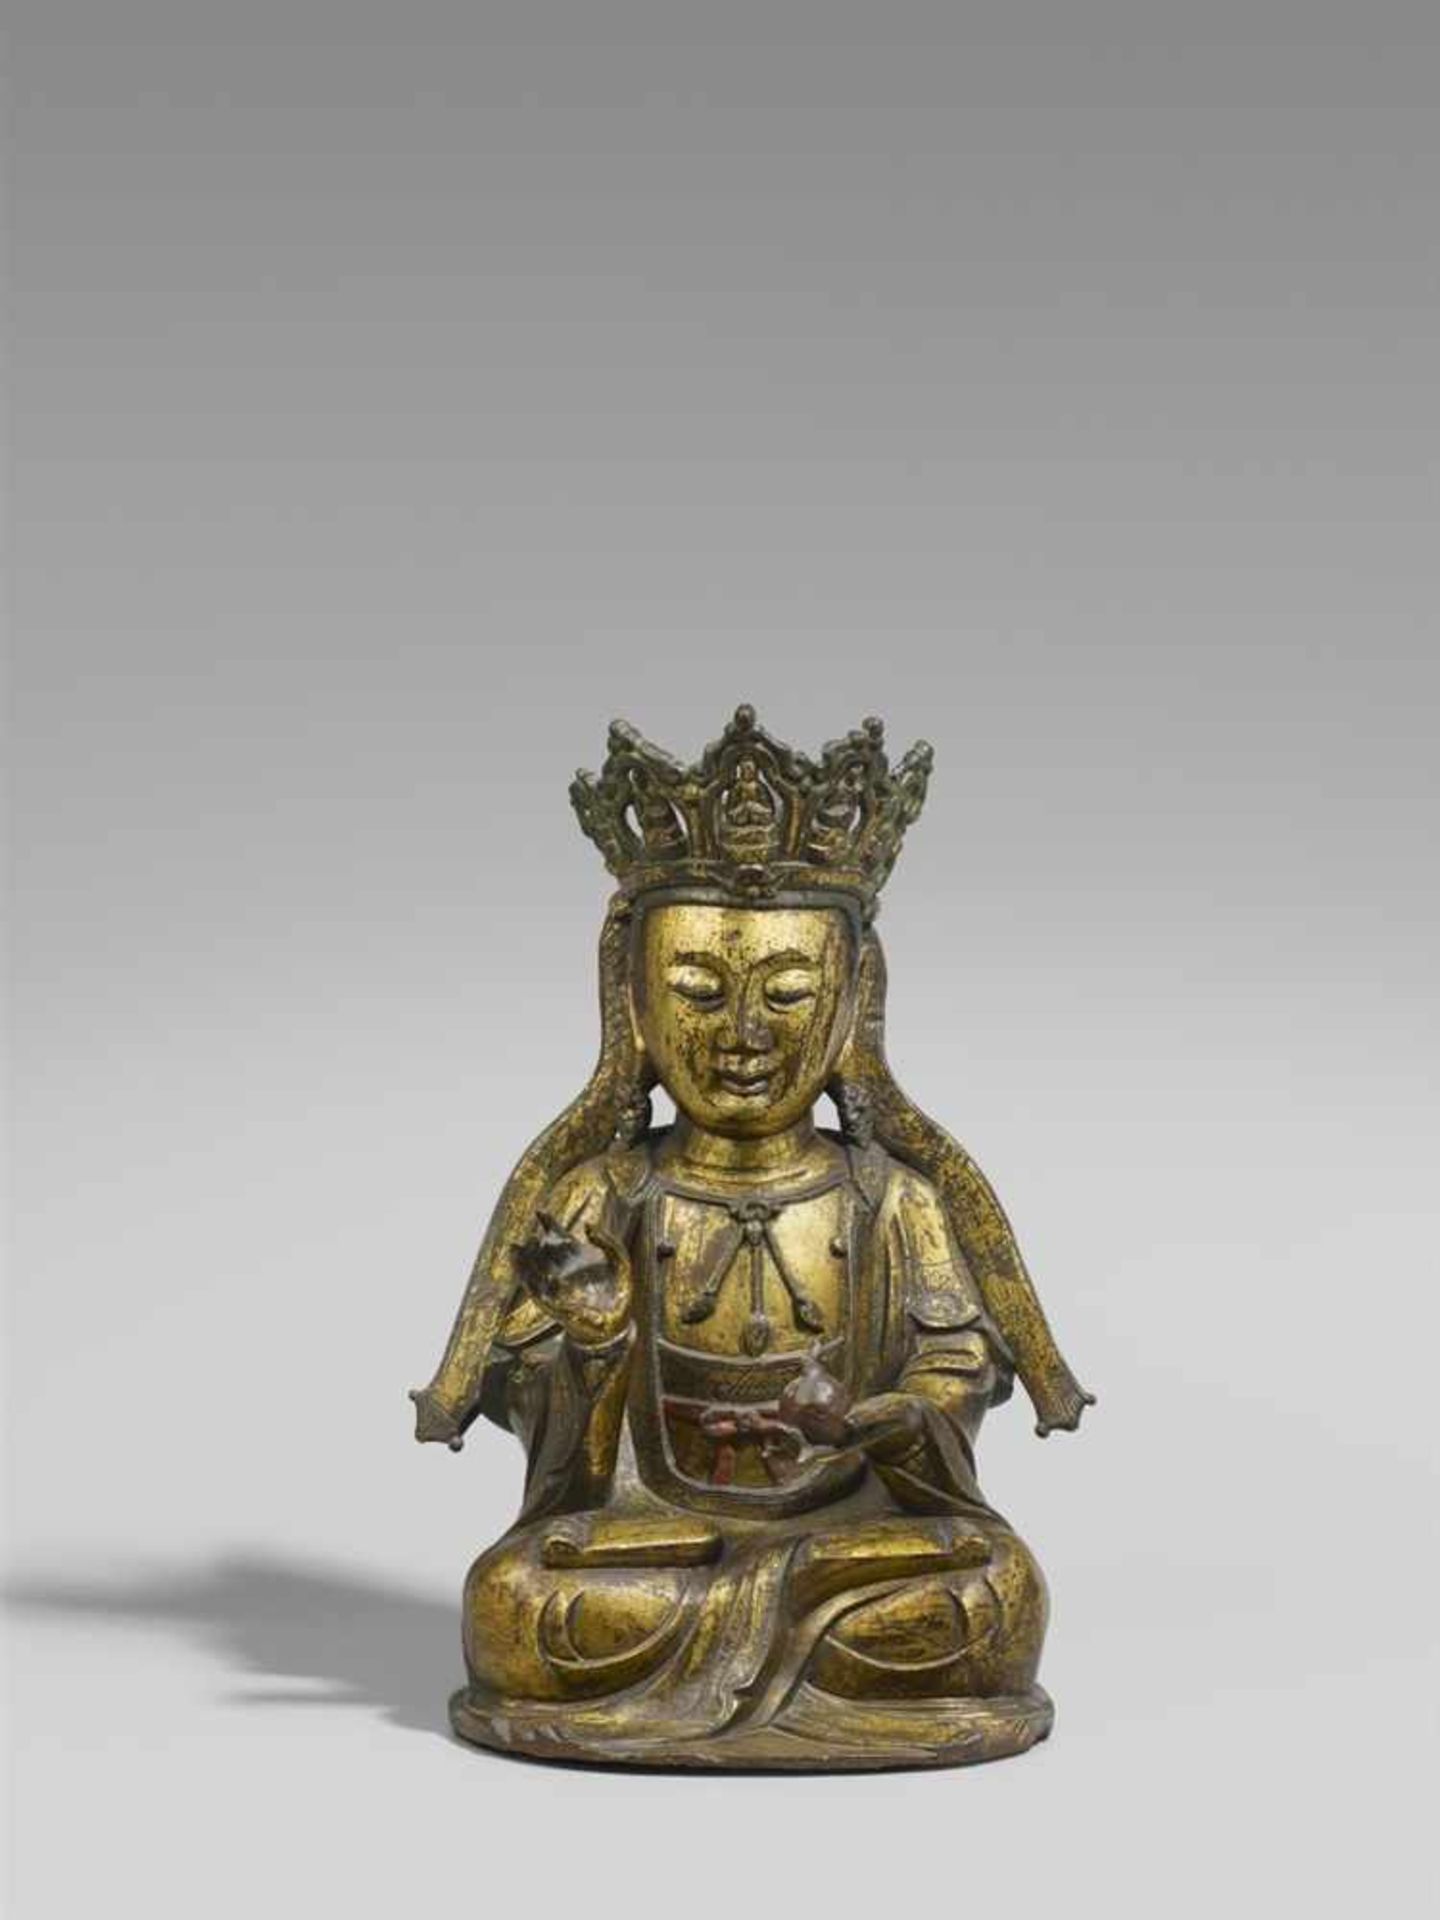 Guanyin. Bronze, vergoldet. 17./18. Jh. Im Meditationssitz, die rechte Hand ist in vitarka mudra